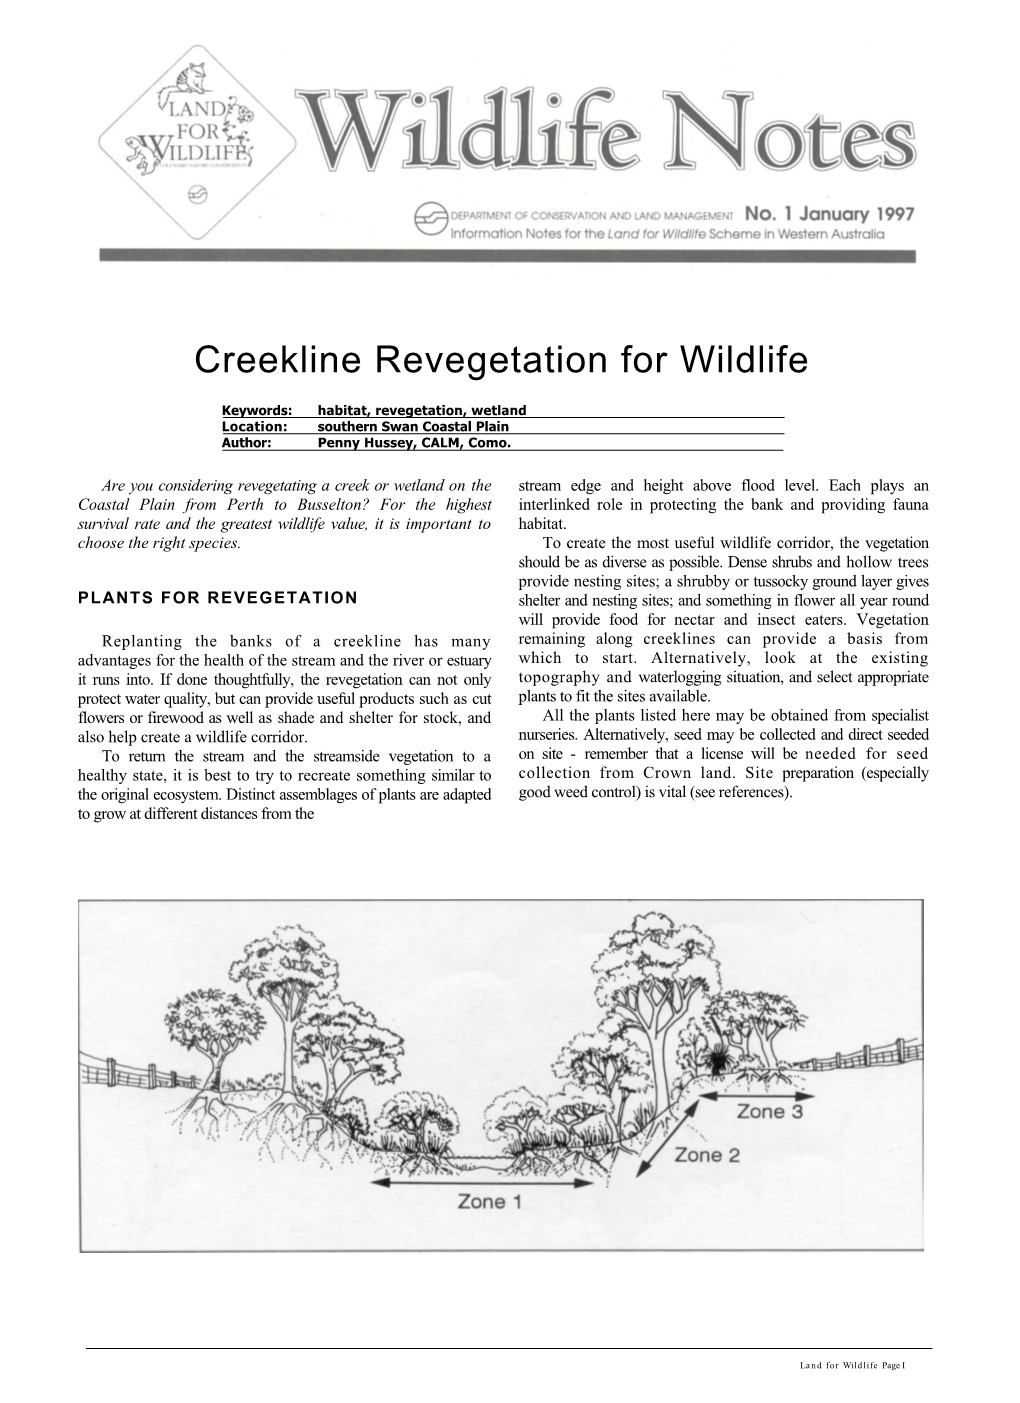 Creekline Revegetation for Wildlife1.28 MB